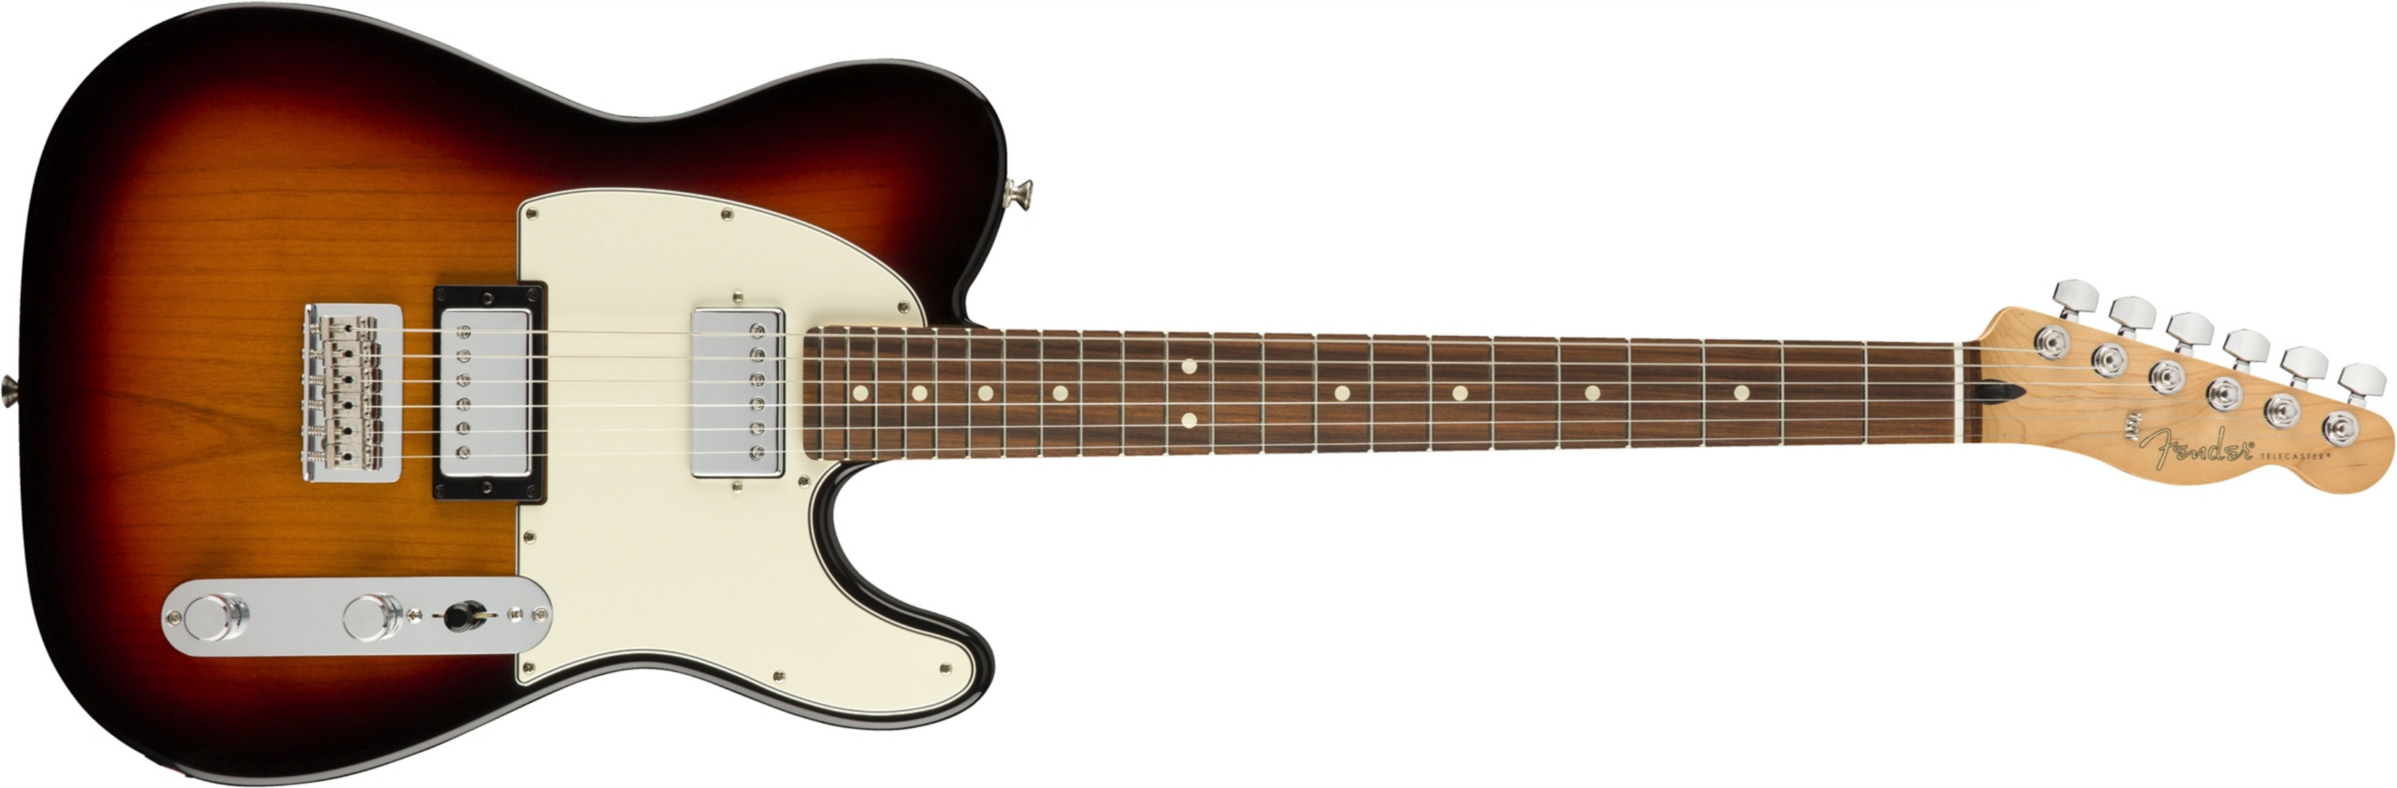 Fender Tele Player Mex Hh Pf - 3-color Sunburst - Tel shape electric guitar - Main picture